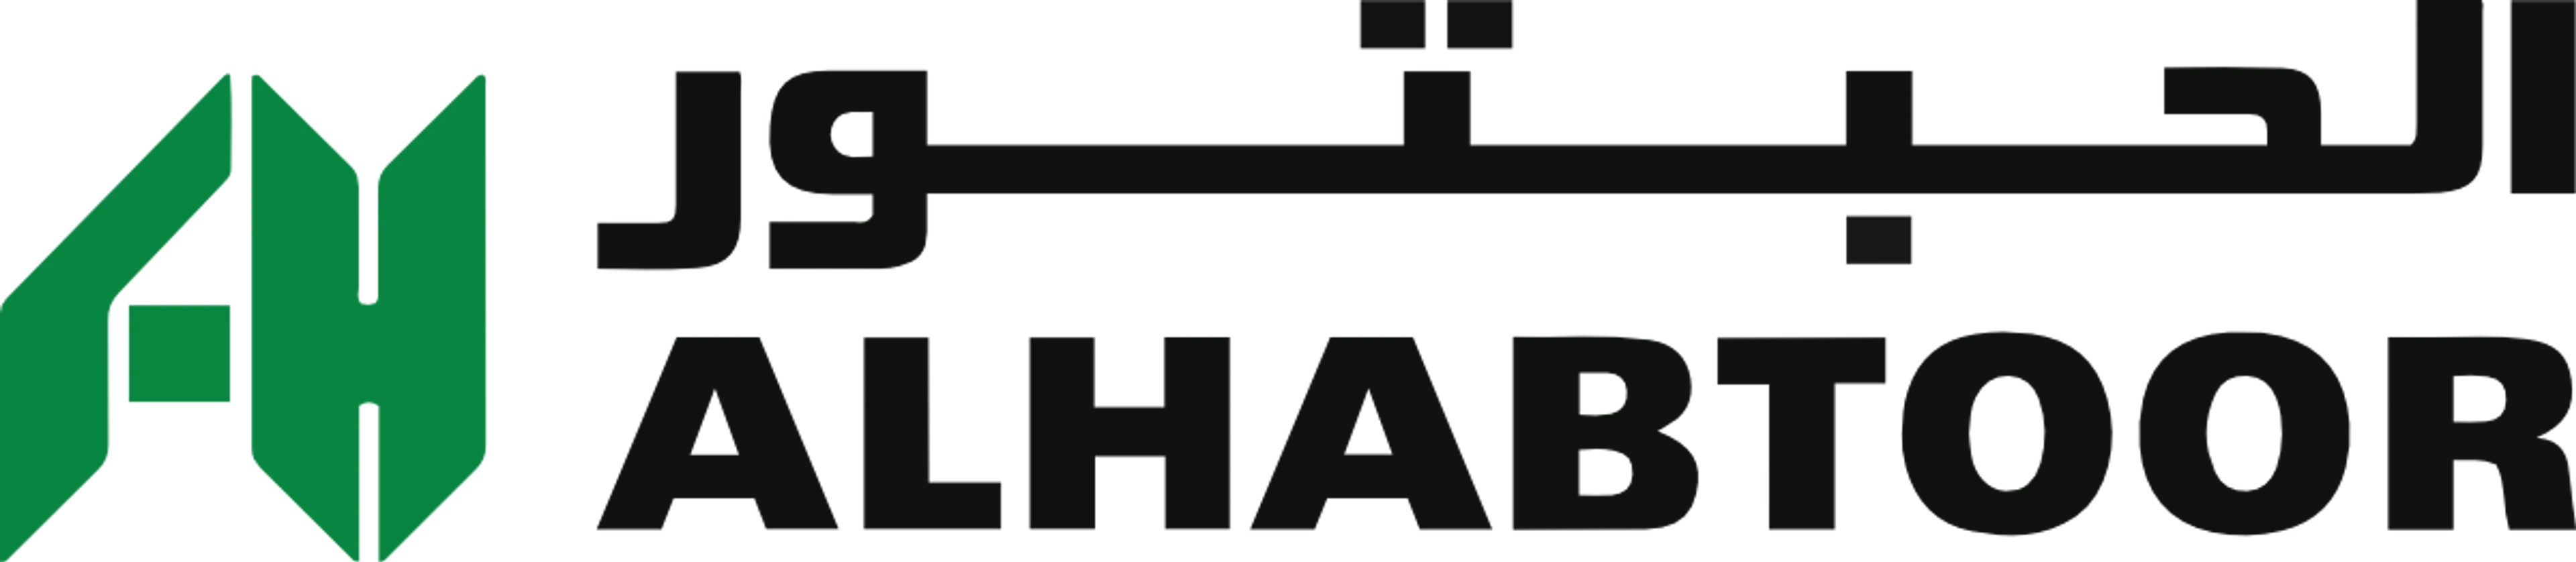 Logo of the real estate developer "Al Habtoor"